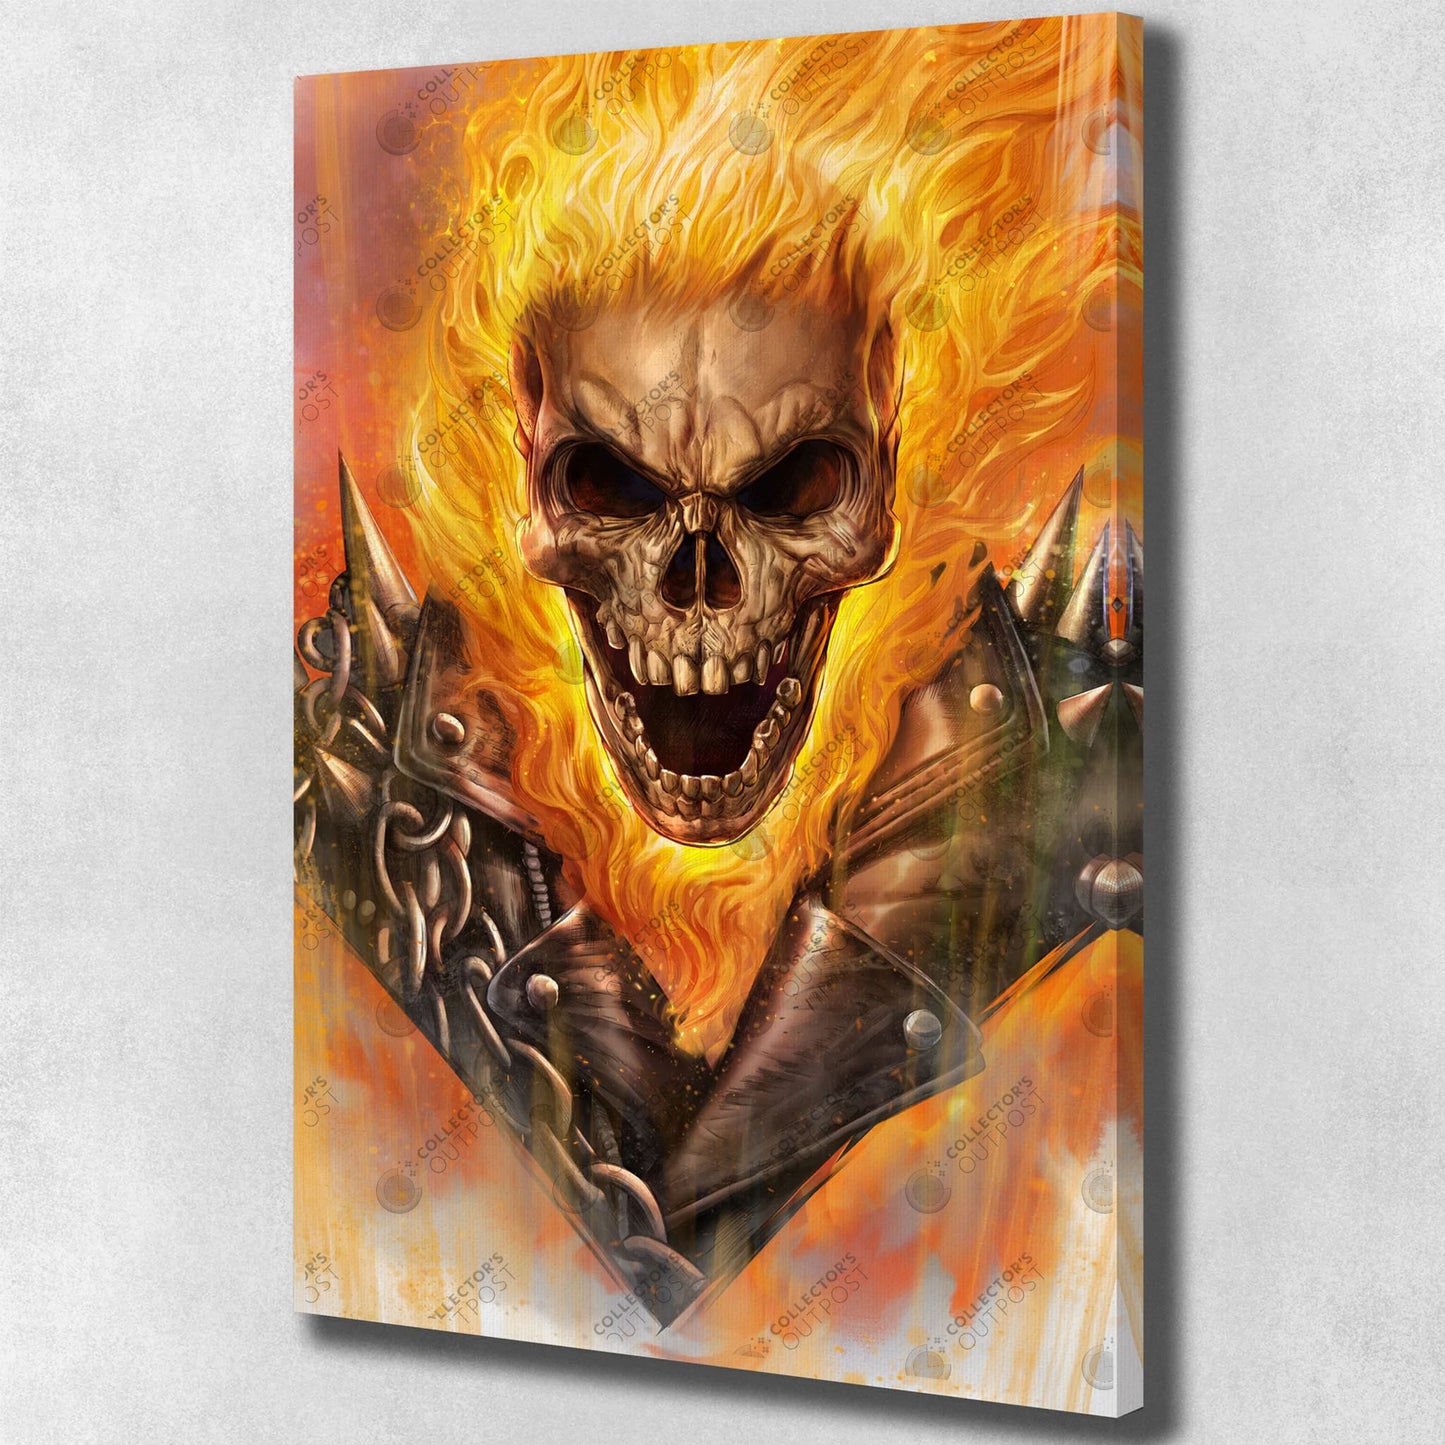 Ghost Rider "Spirit of Vengeance" (Marvel) Legacy Portrait Art Print